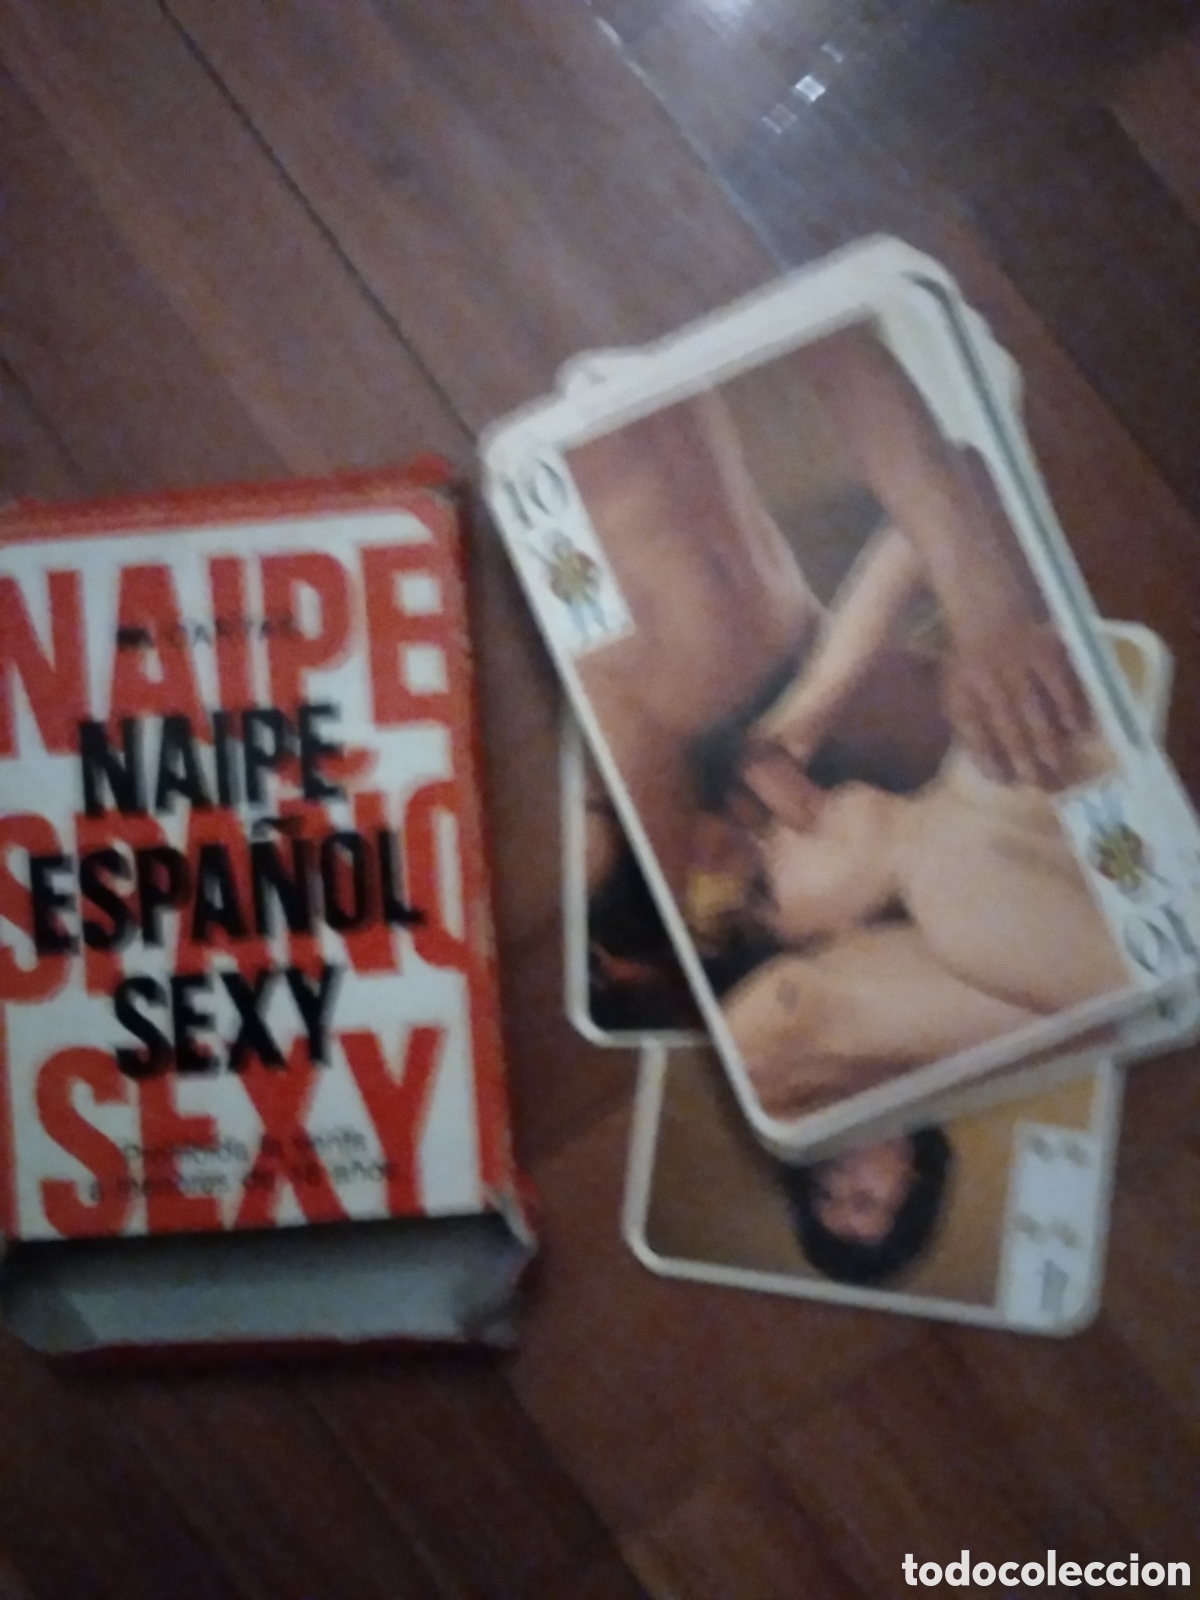 baraja de cartas eróticas española - Compra venta en todocoleccion